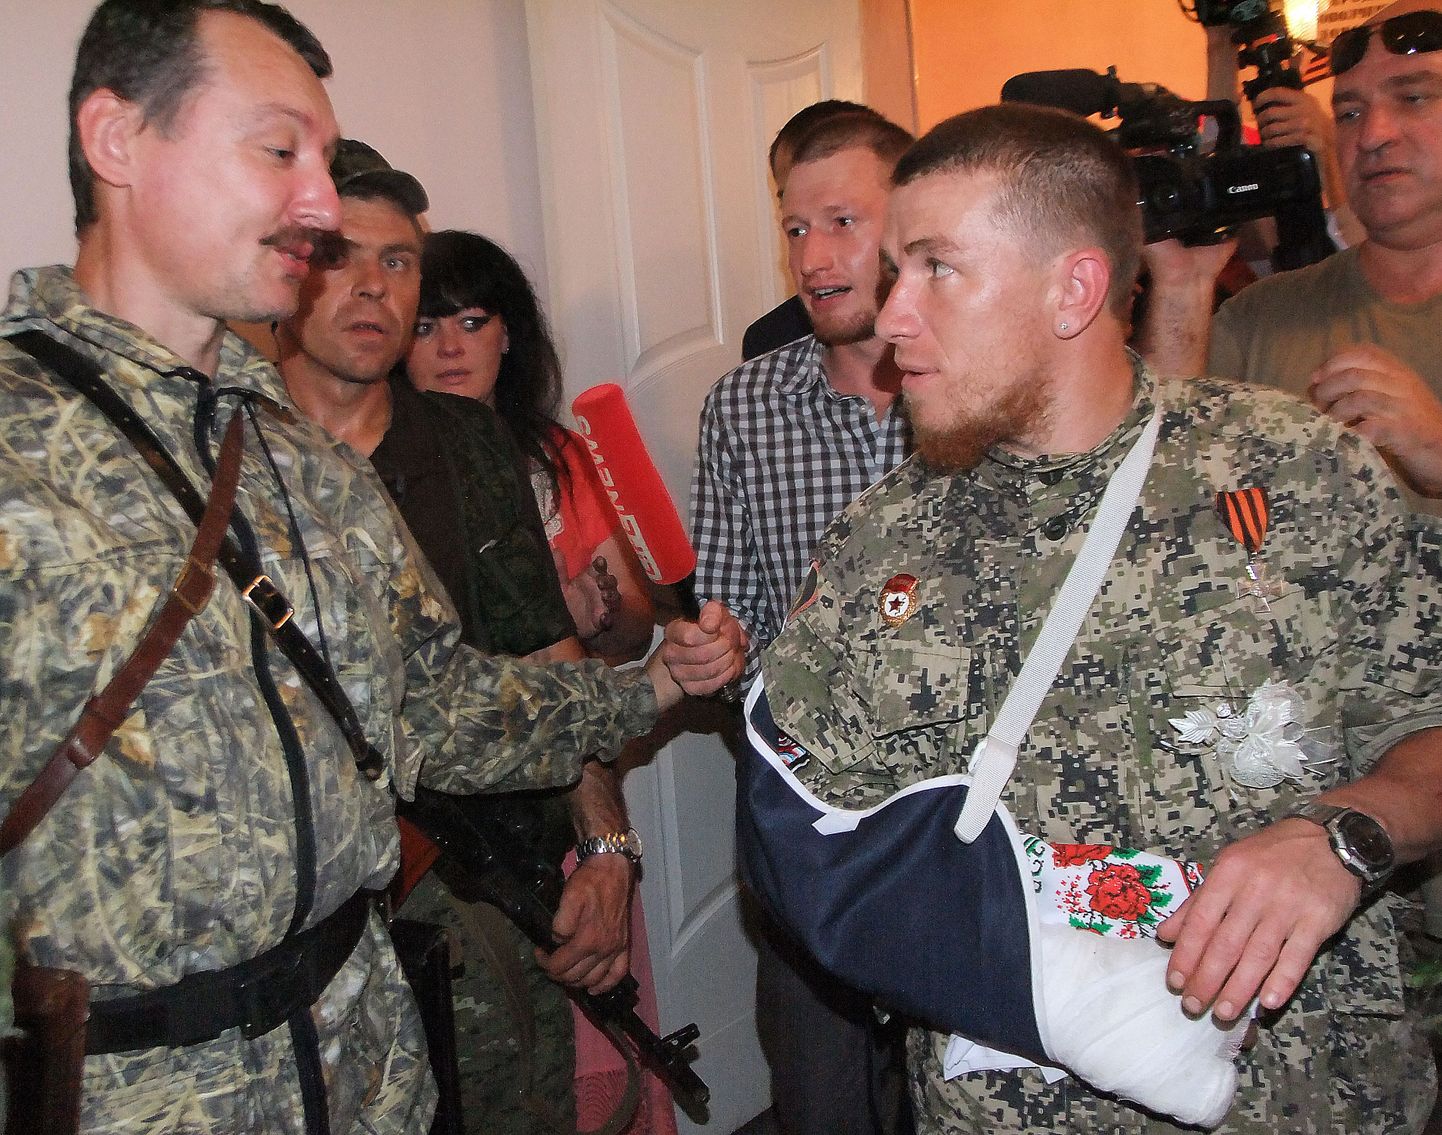 Igor Strelkov ja Arsen Pavlov. Pavlov hüüdnimega Motorola juhtis 2014. aasta aprillis alanud Donbassi sõjas valitsusvastast relvaüksust Sparta. Pavlov hukkus mullu oktoobris improviseeritud lõhkekeha plahvatuses ühes Donetski elamu liftis.